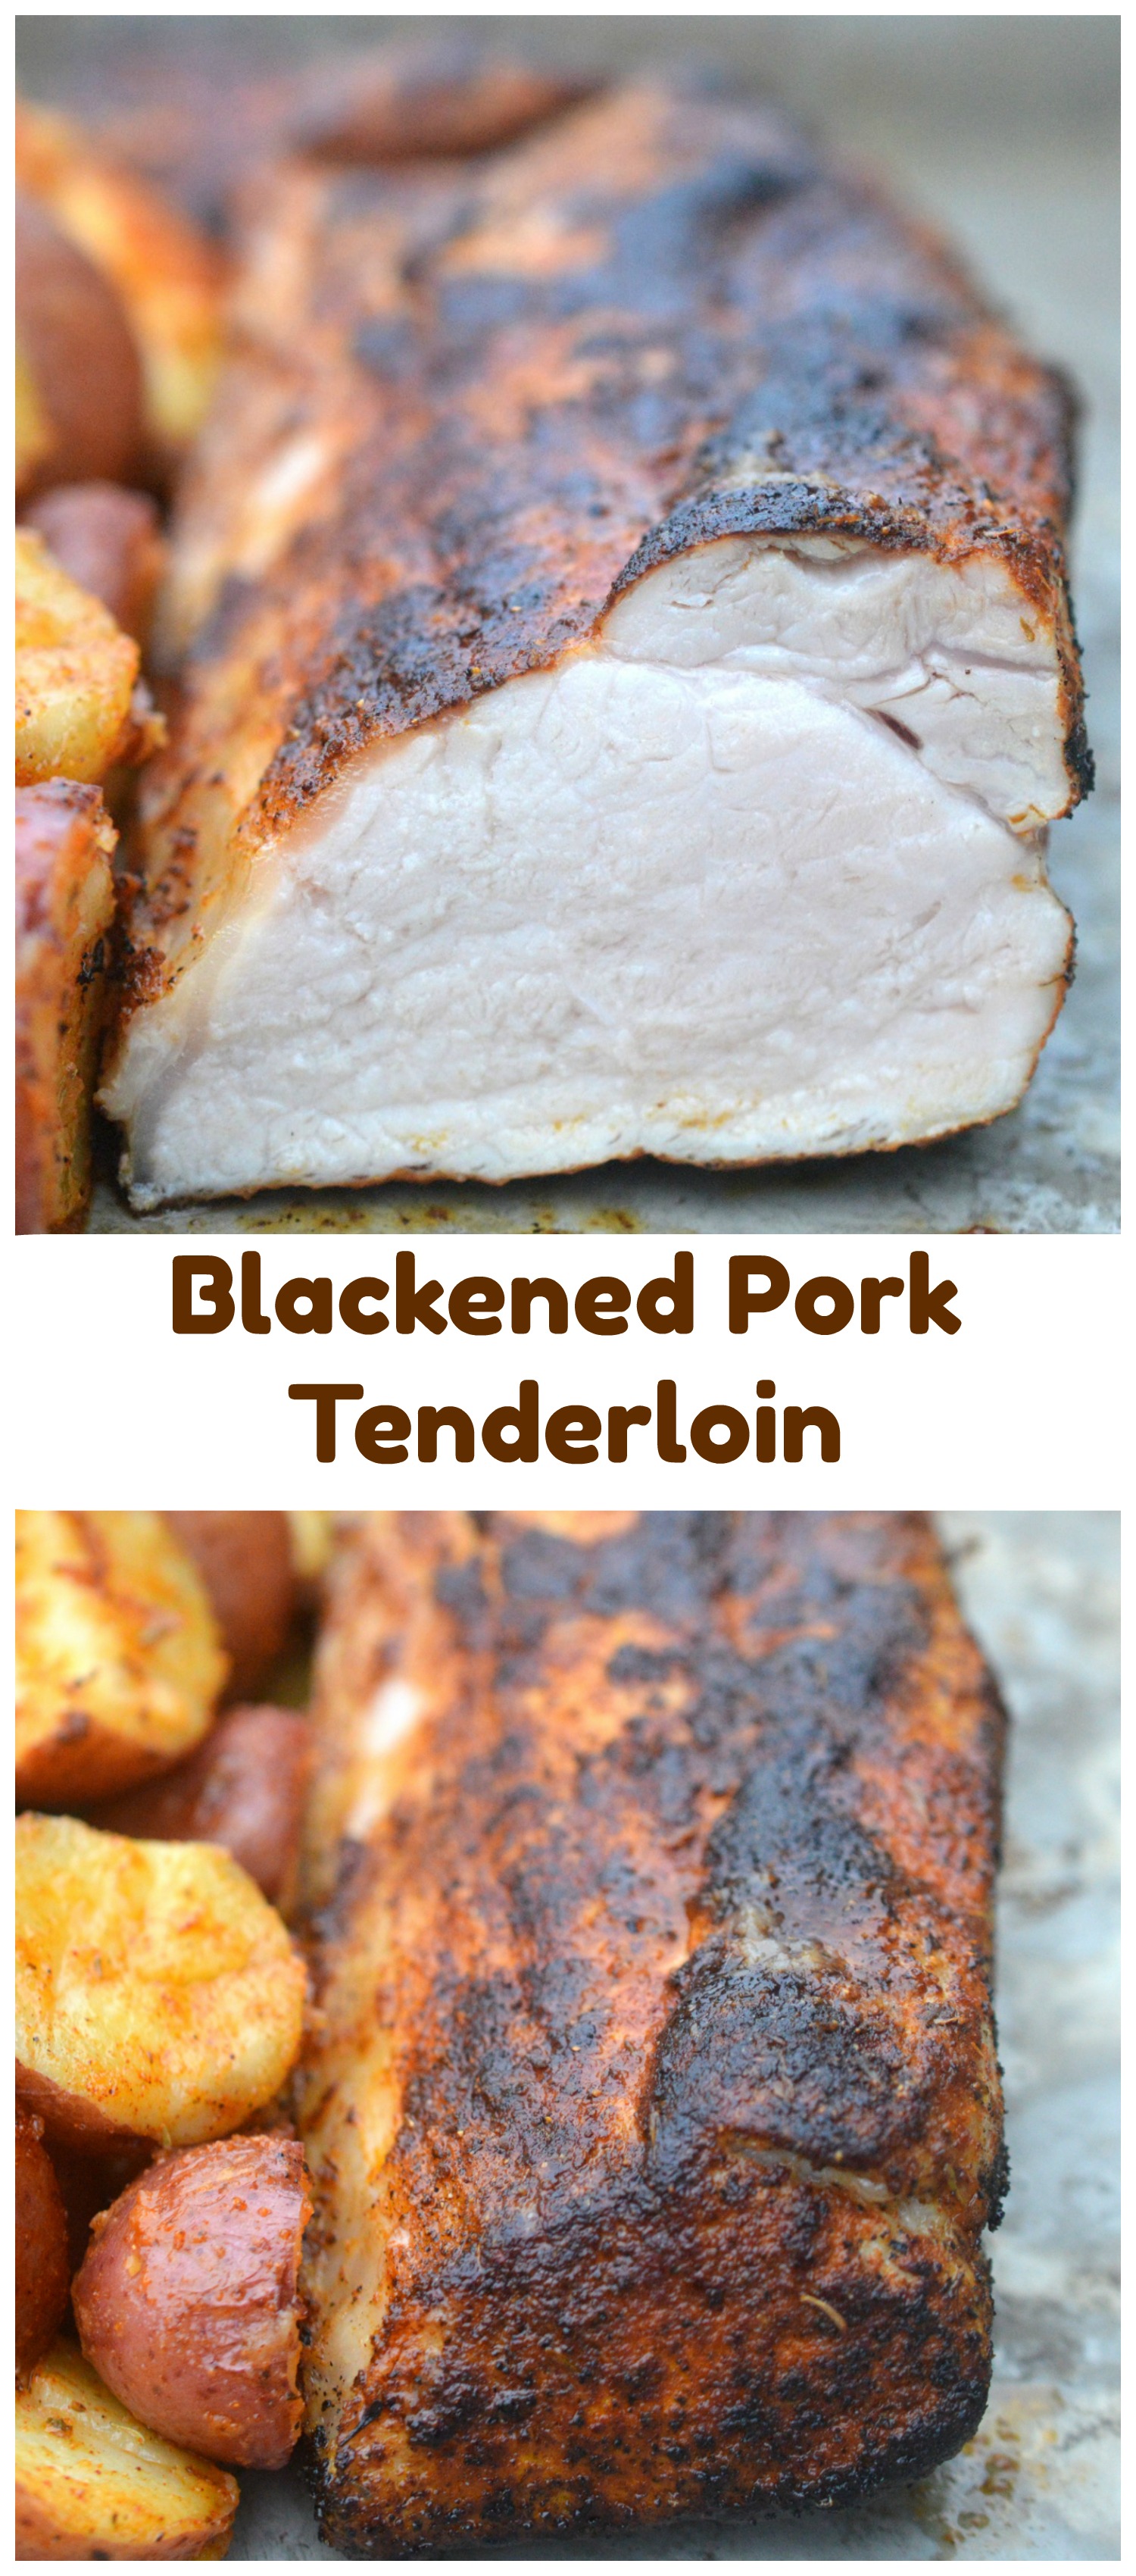 Blackened Pork Tenderloin 30 Minute Meal